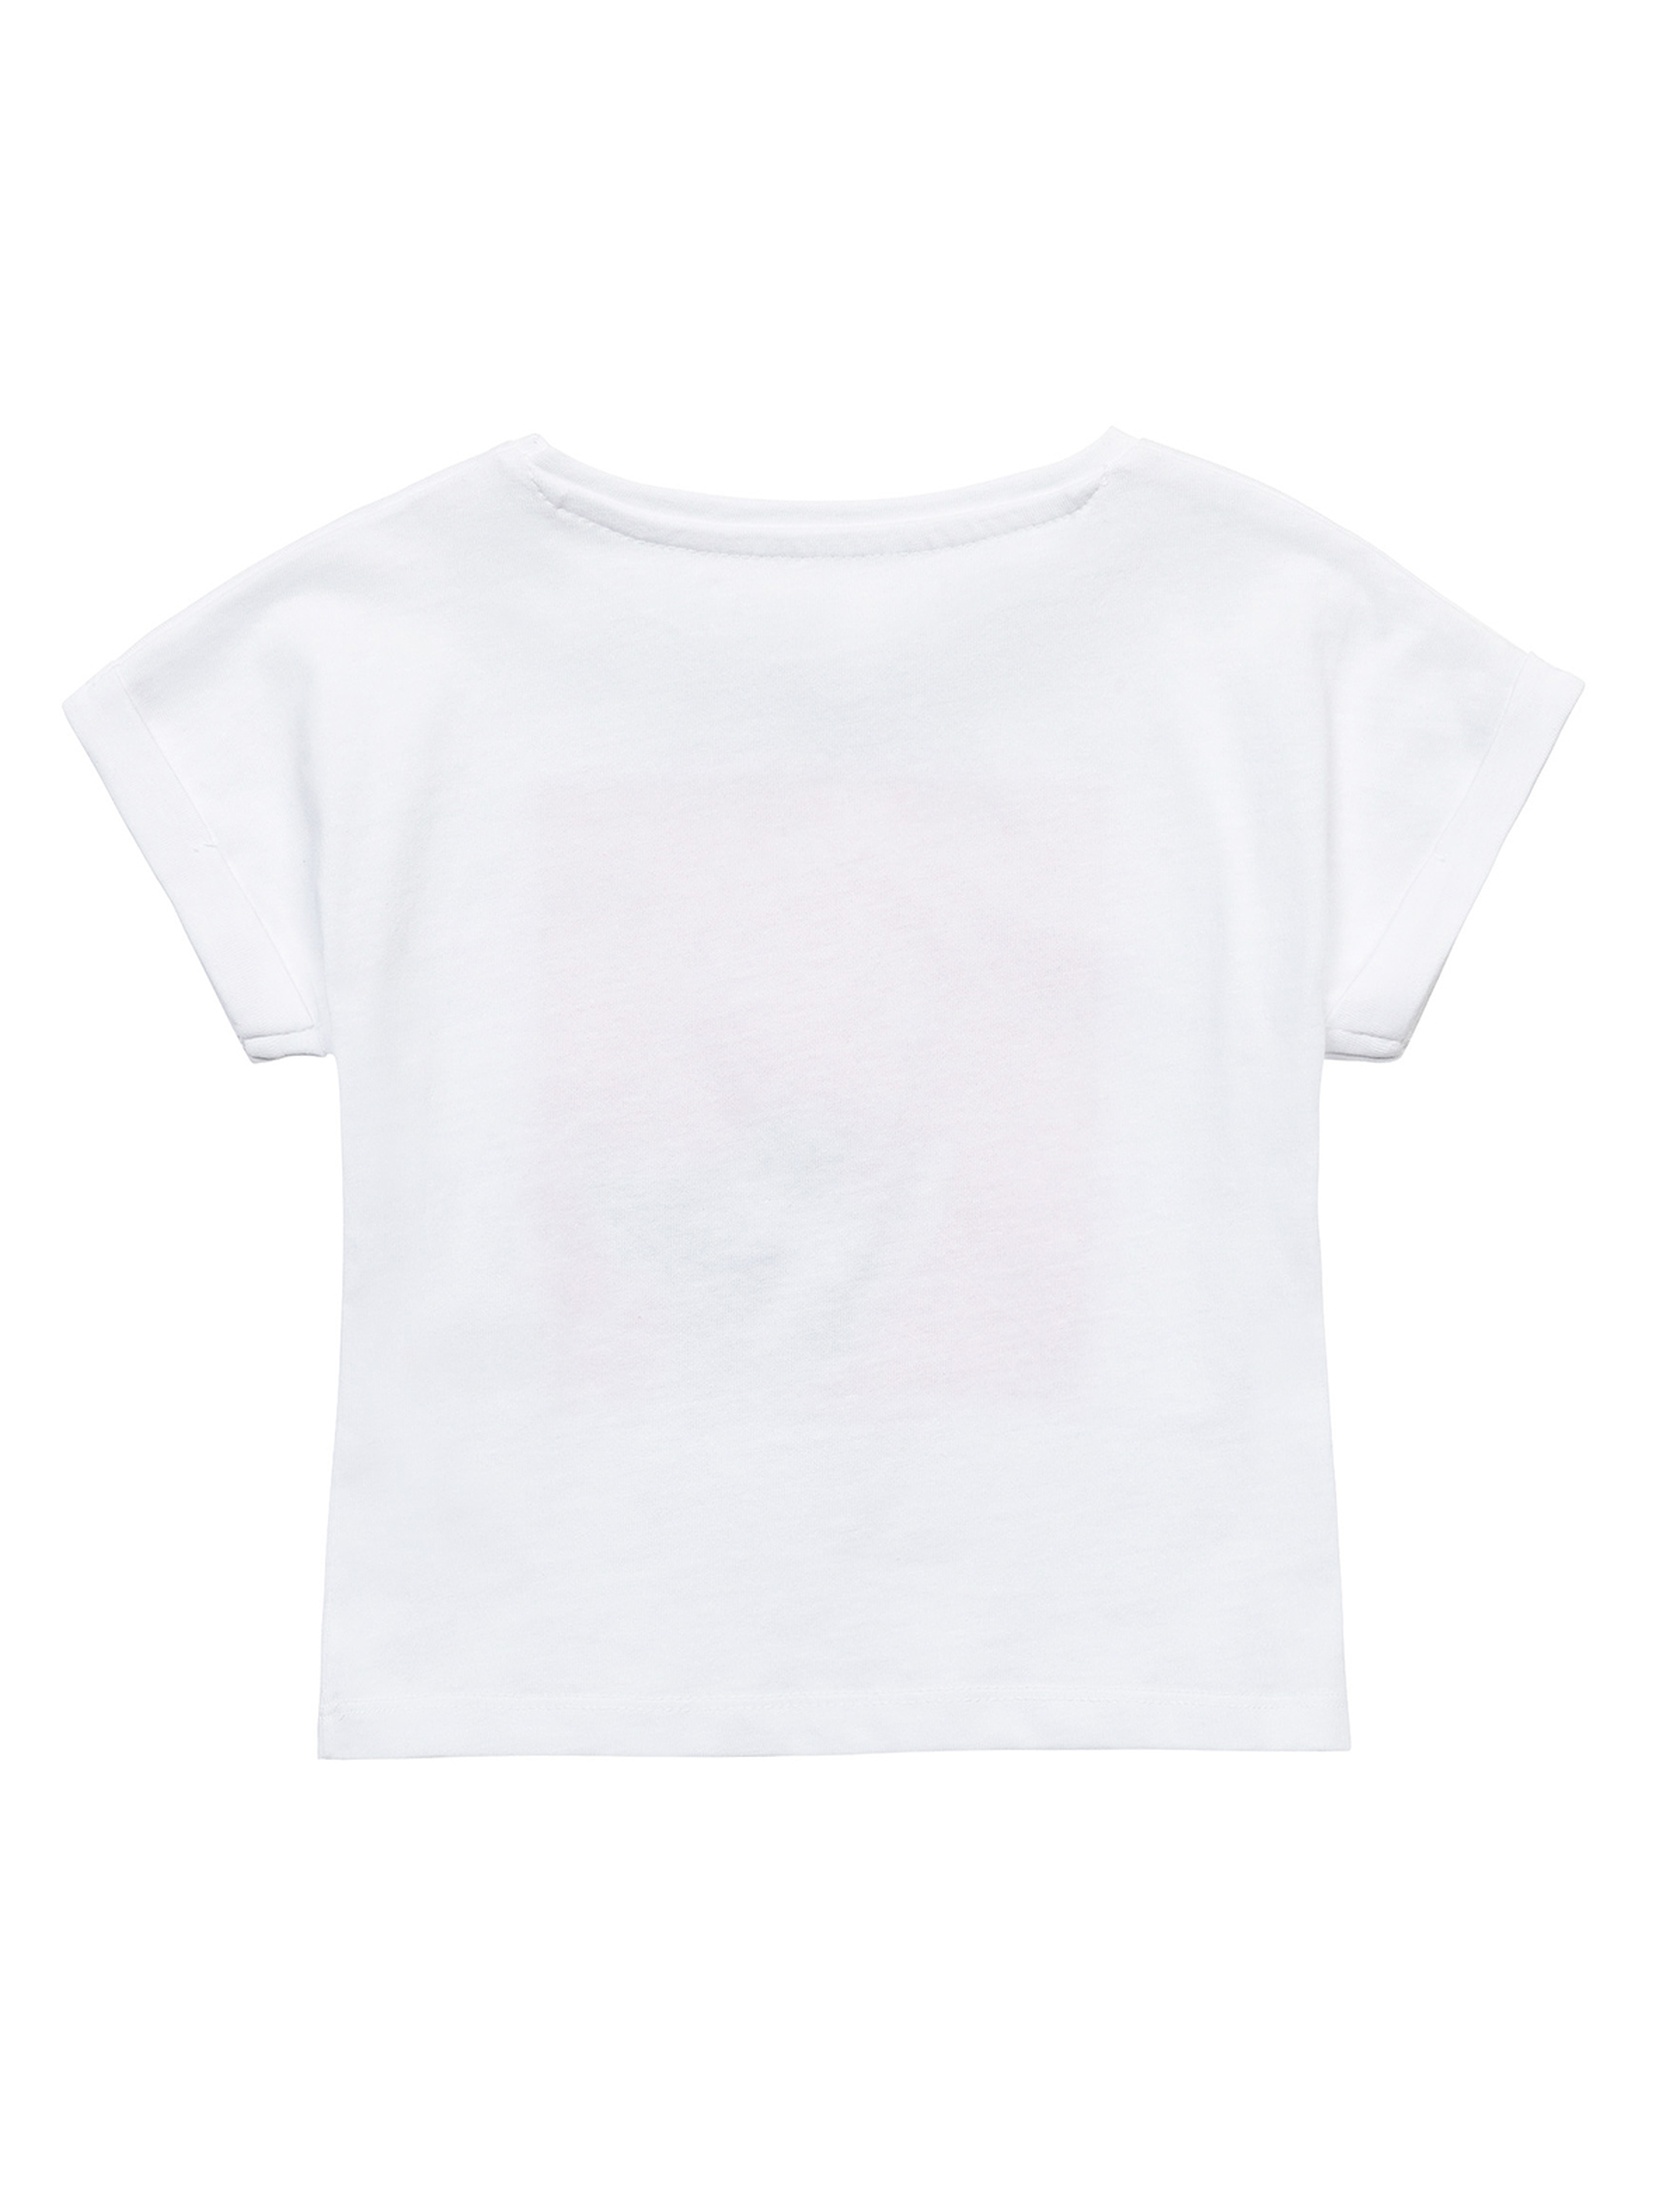 Biały t-shirt bawełniany dla niemowlaka z nadrukiem